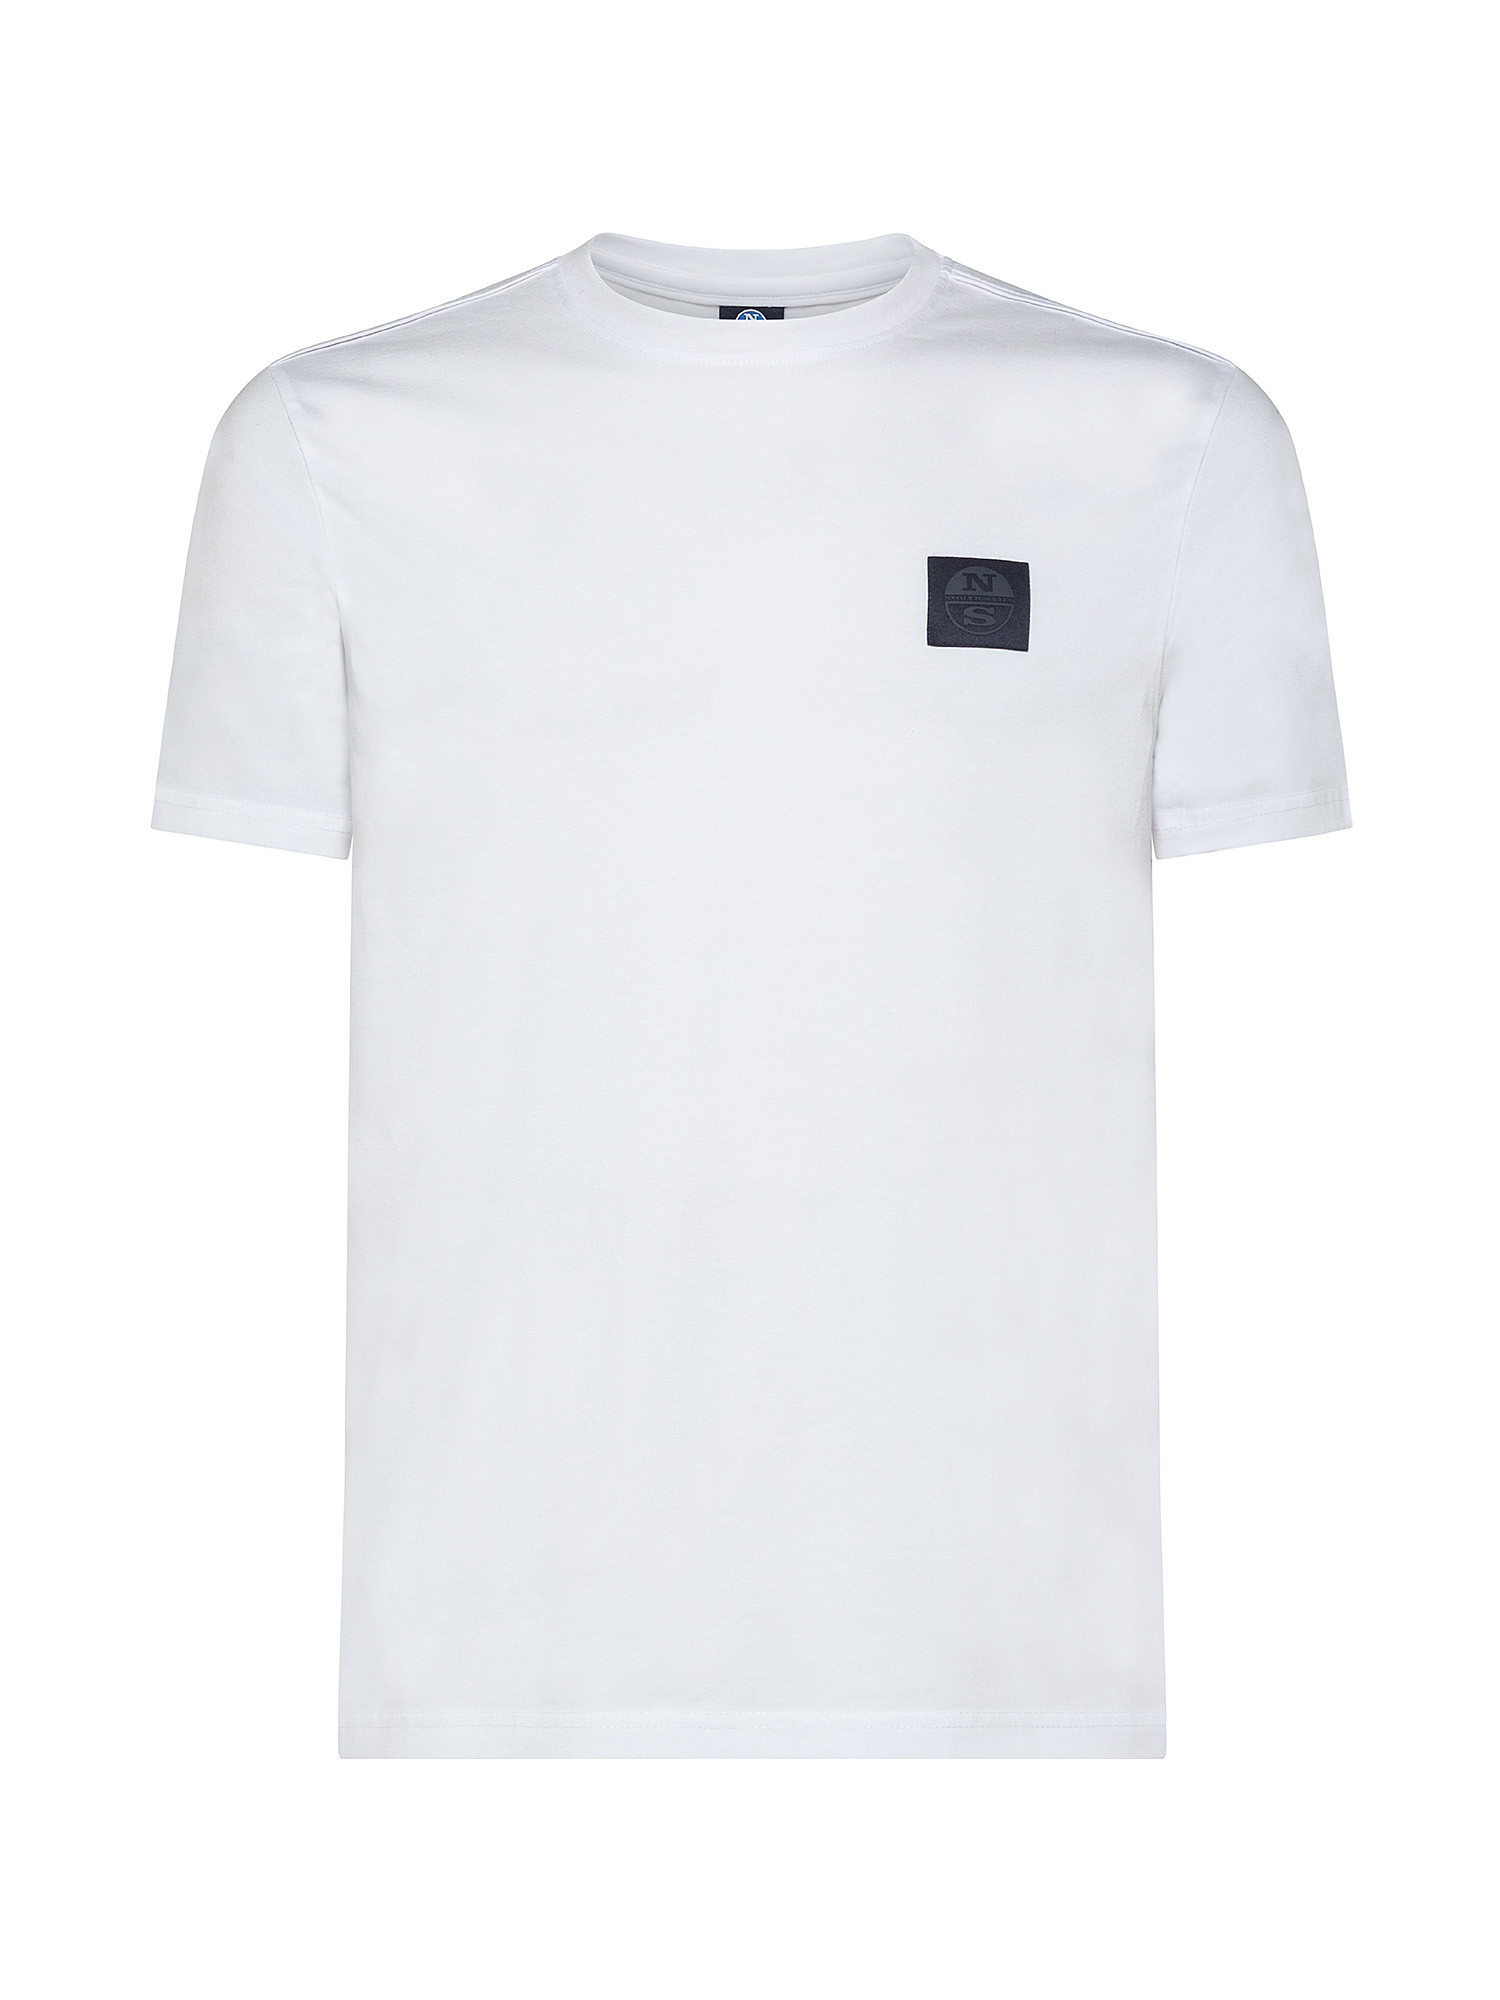 Short sleeve t-shirt with logo, White, large image number 0